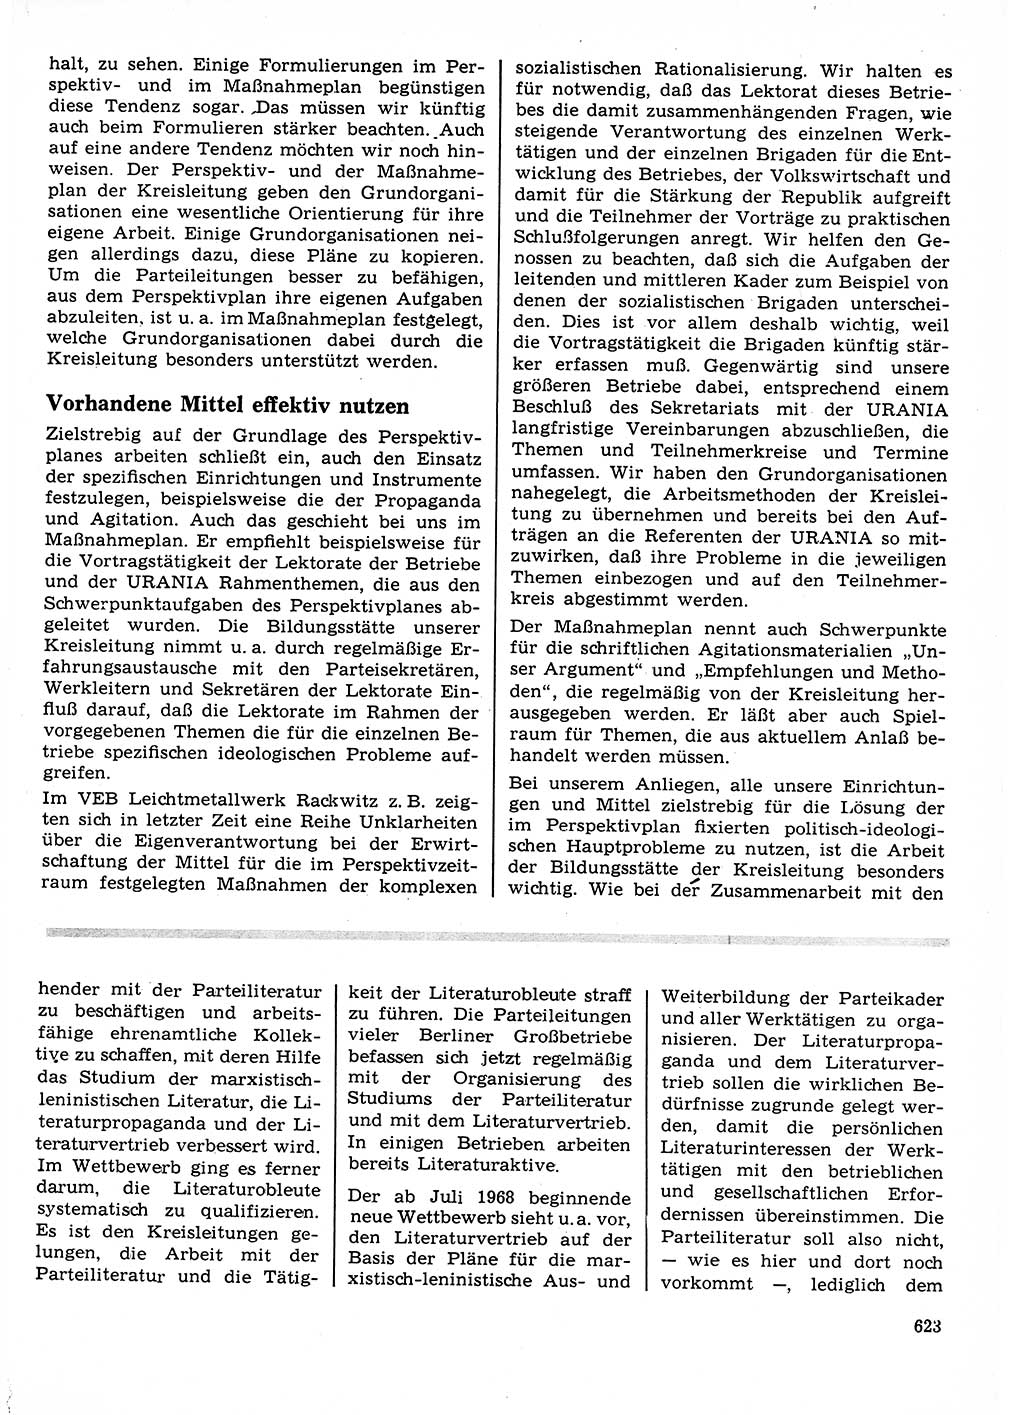 Neuer Weg (NW), Organ des Zentralkomitees (ZK) der SED (Sozialistische Einheitspartei Deutschlands) für Fragen des Parteilebens, 23. Jahrgang [Deutsche Demokratische Republik (DDR)] 1968, Seite 623 (NW ZK SED DDR 1968, S. 623)